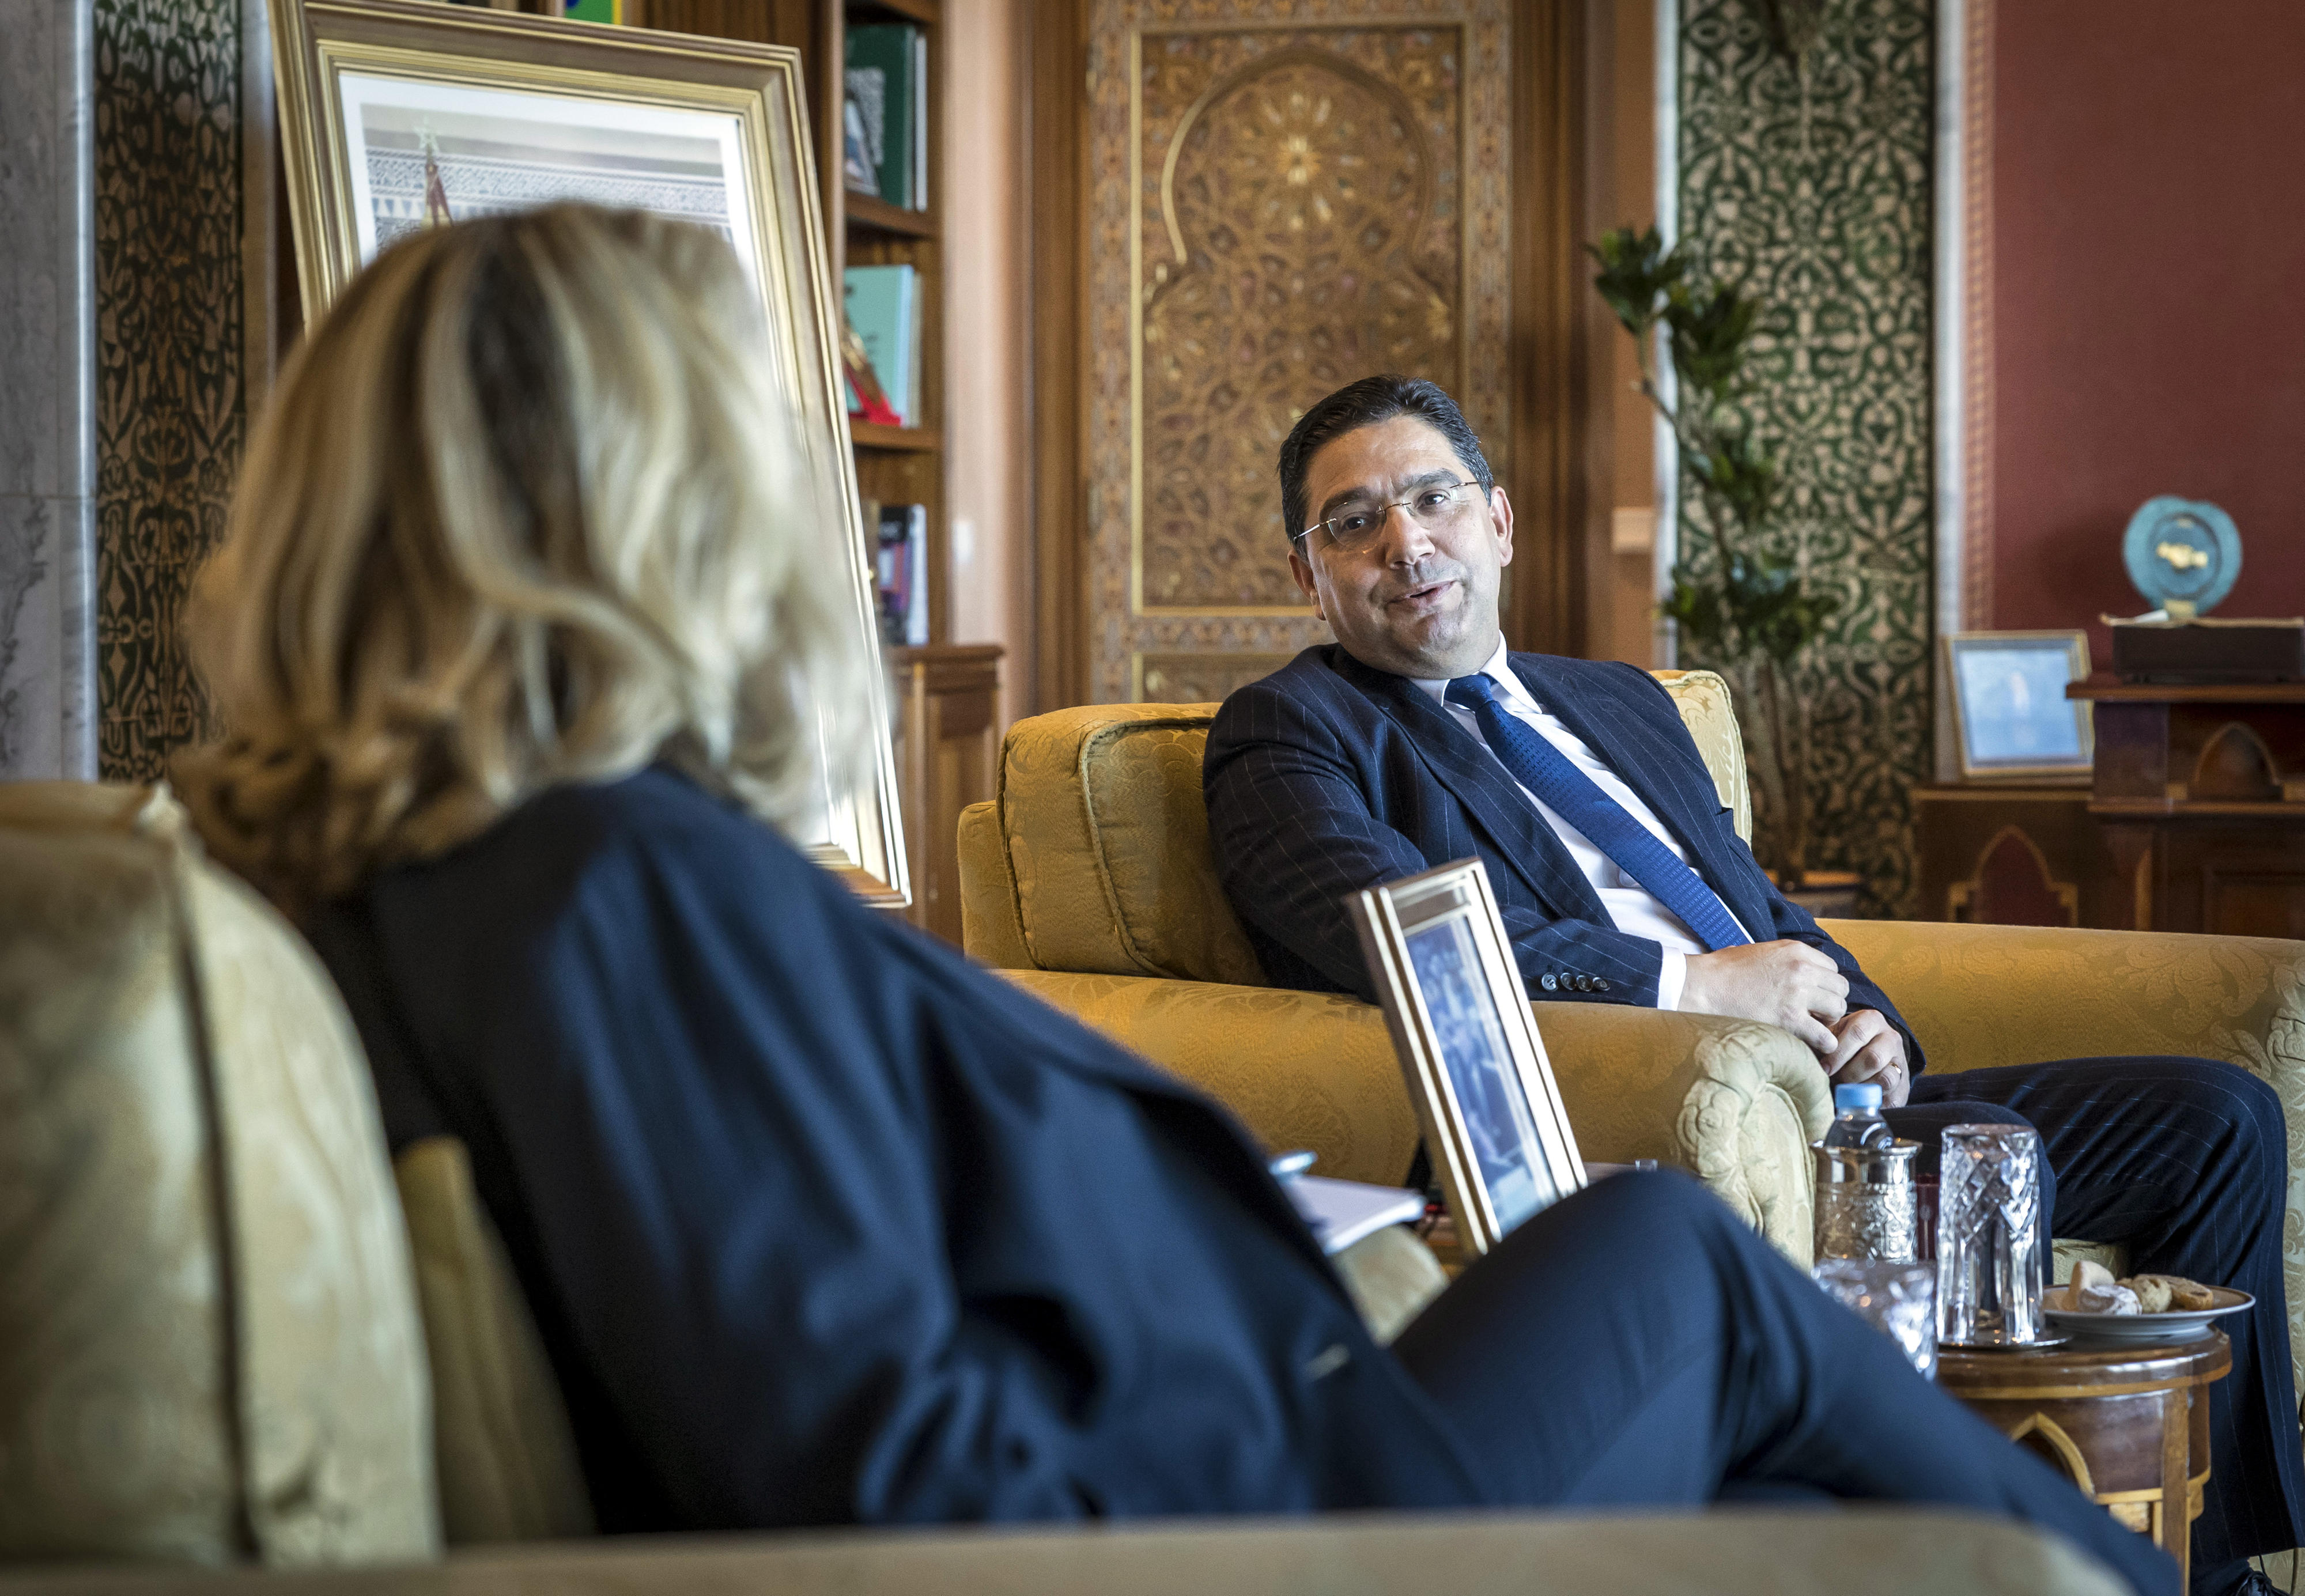 Entwicklungsministerin Svenja Schulze und der marokkanische Außenminister Nasser Bourita bei ihrem Treffen in Rabat